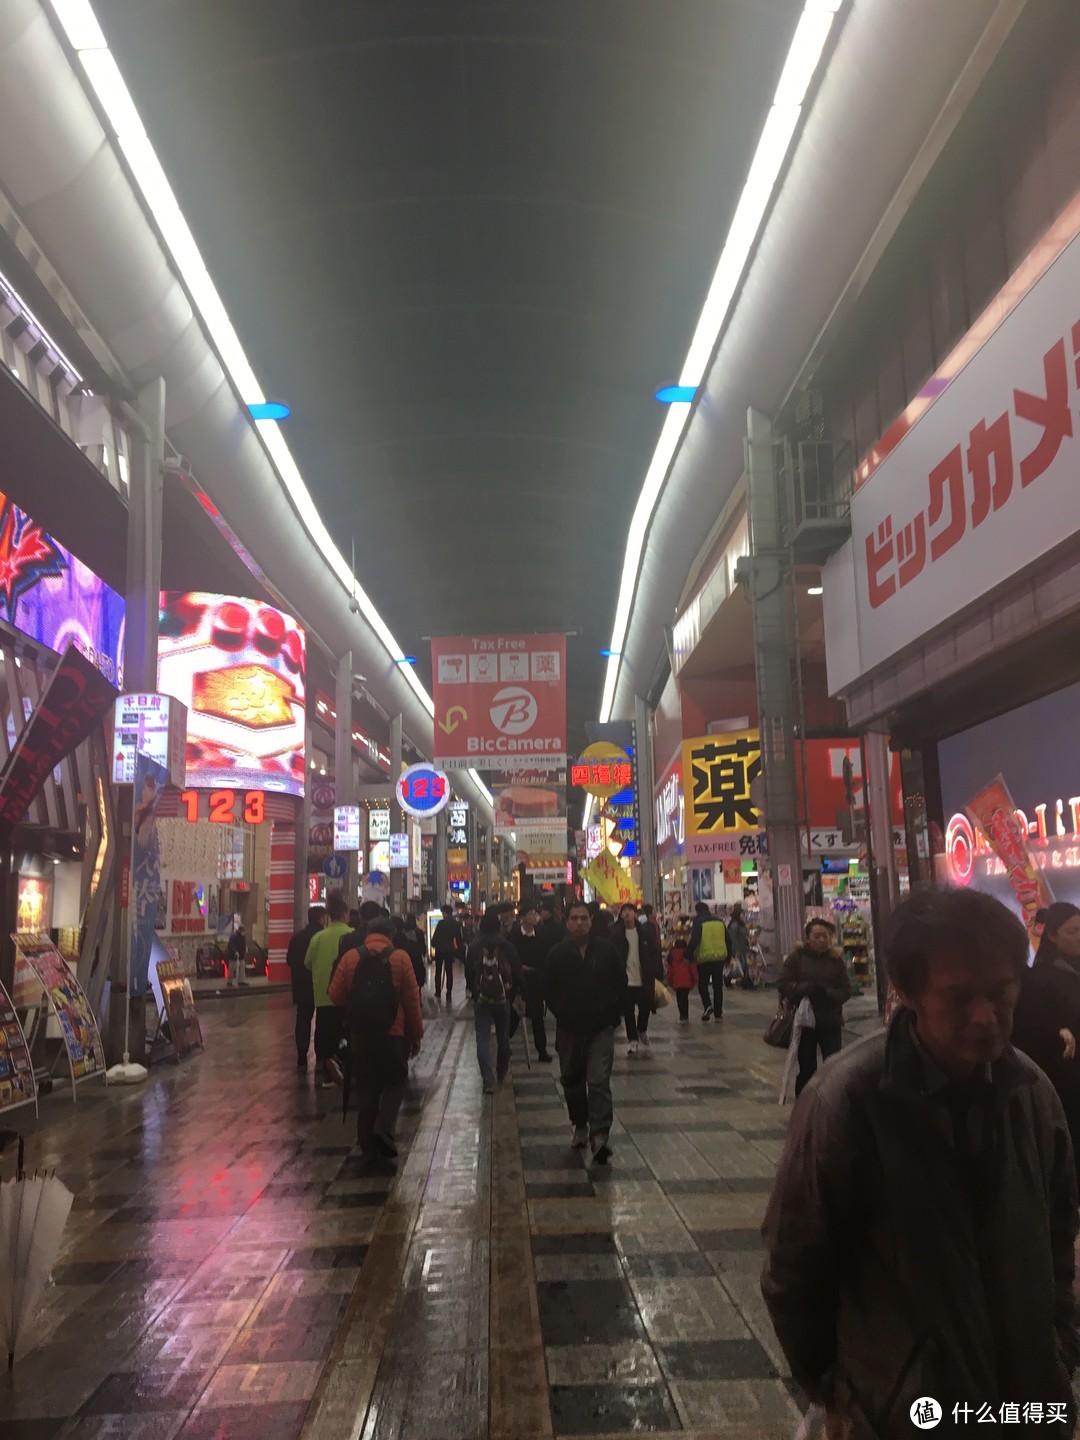 到达大阪难波，导游介绍了几个购物点，吃了饭来到了附近的bic camera逛逛